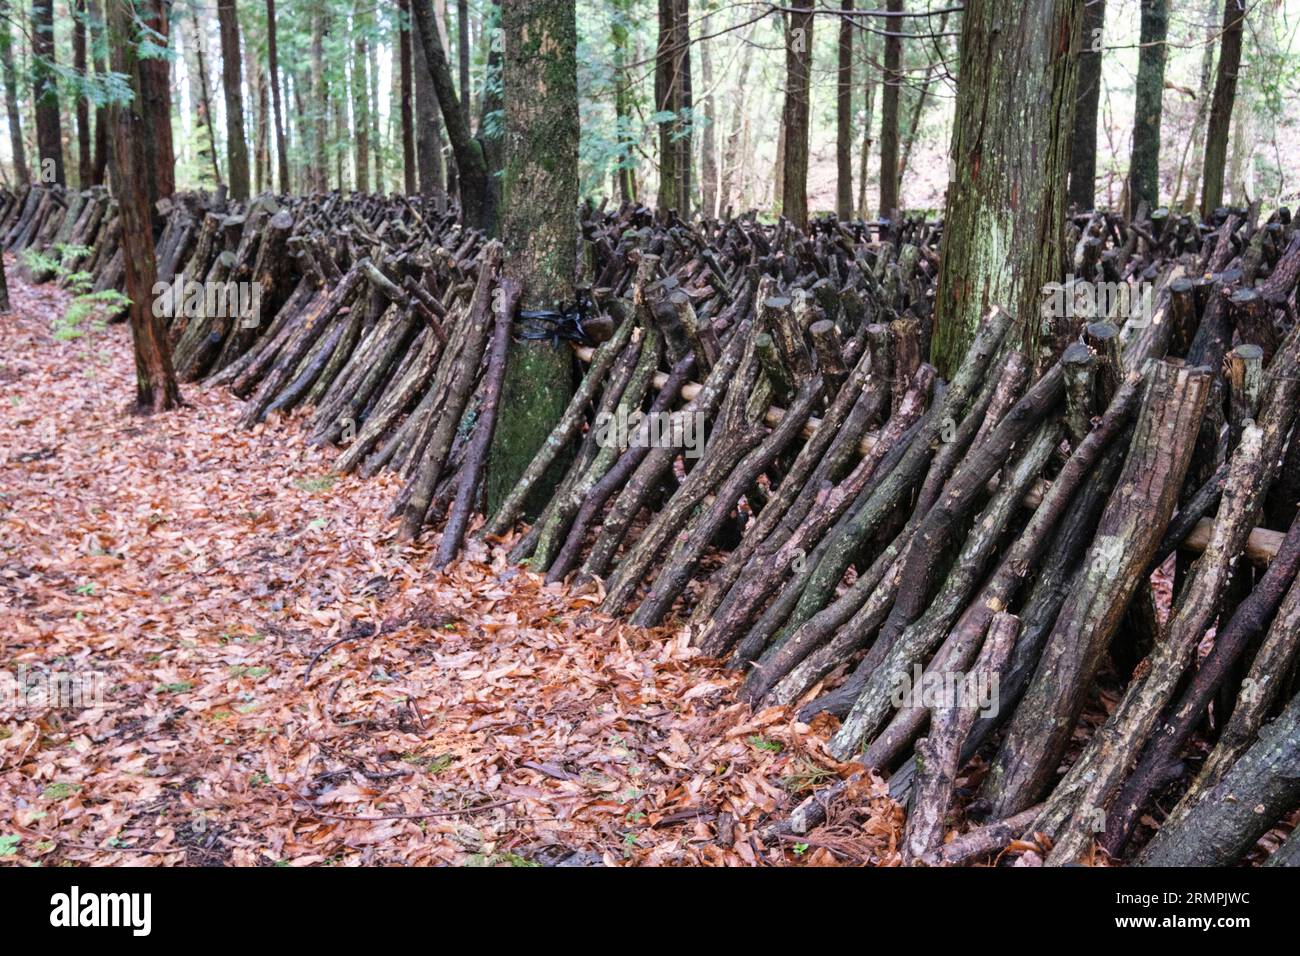 Giappone, Kyushu. Fattoria di funghi shiitake nella foresta. Le spore di funghi saranno impiantate su questi tronchi di quercia. Foto Stock